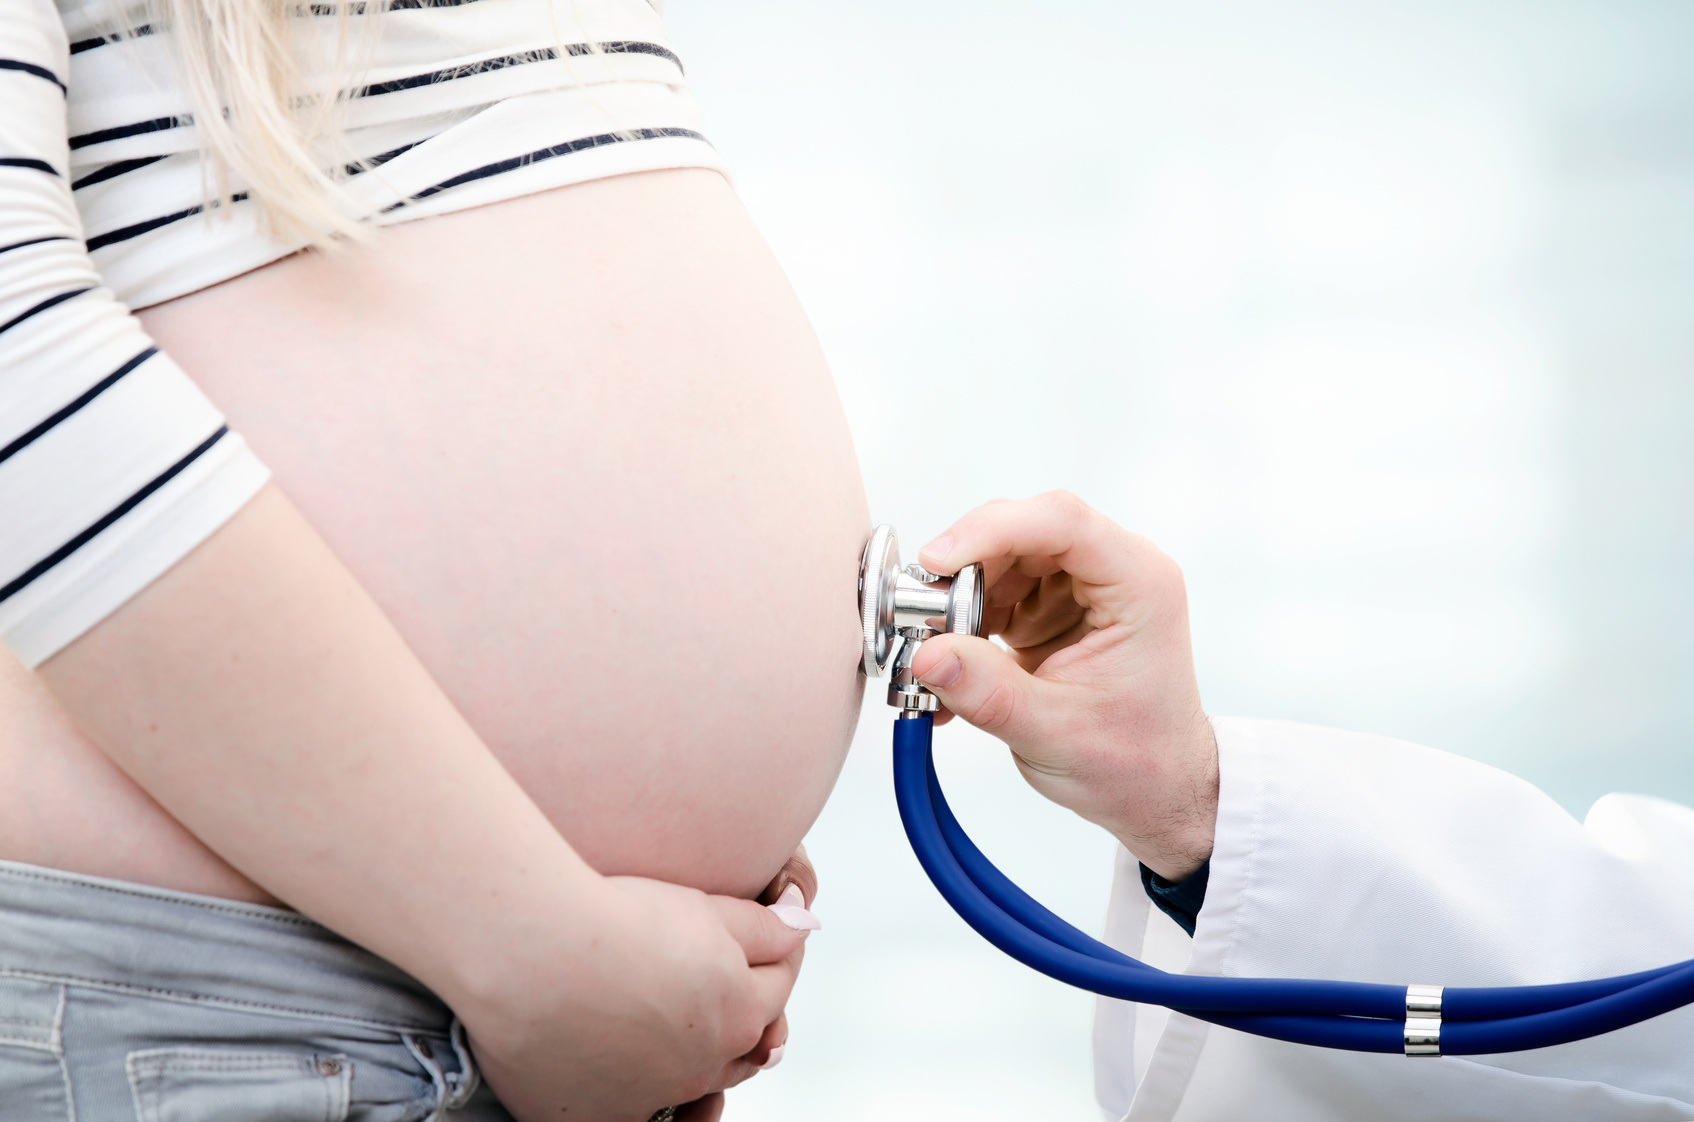 Les examens de grossesse : ce qu'il faut savoir - Premiers Moments